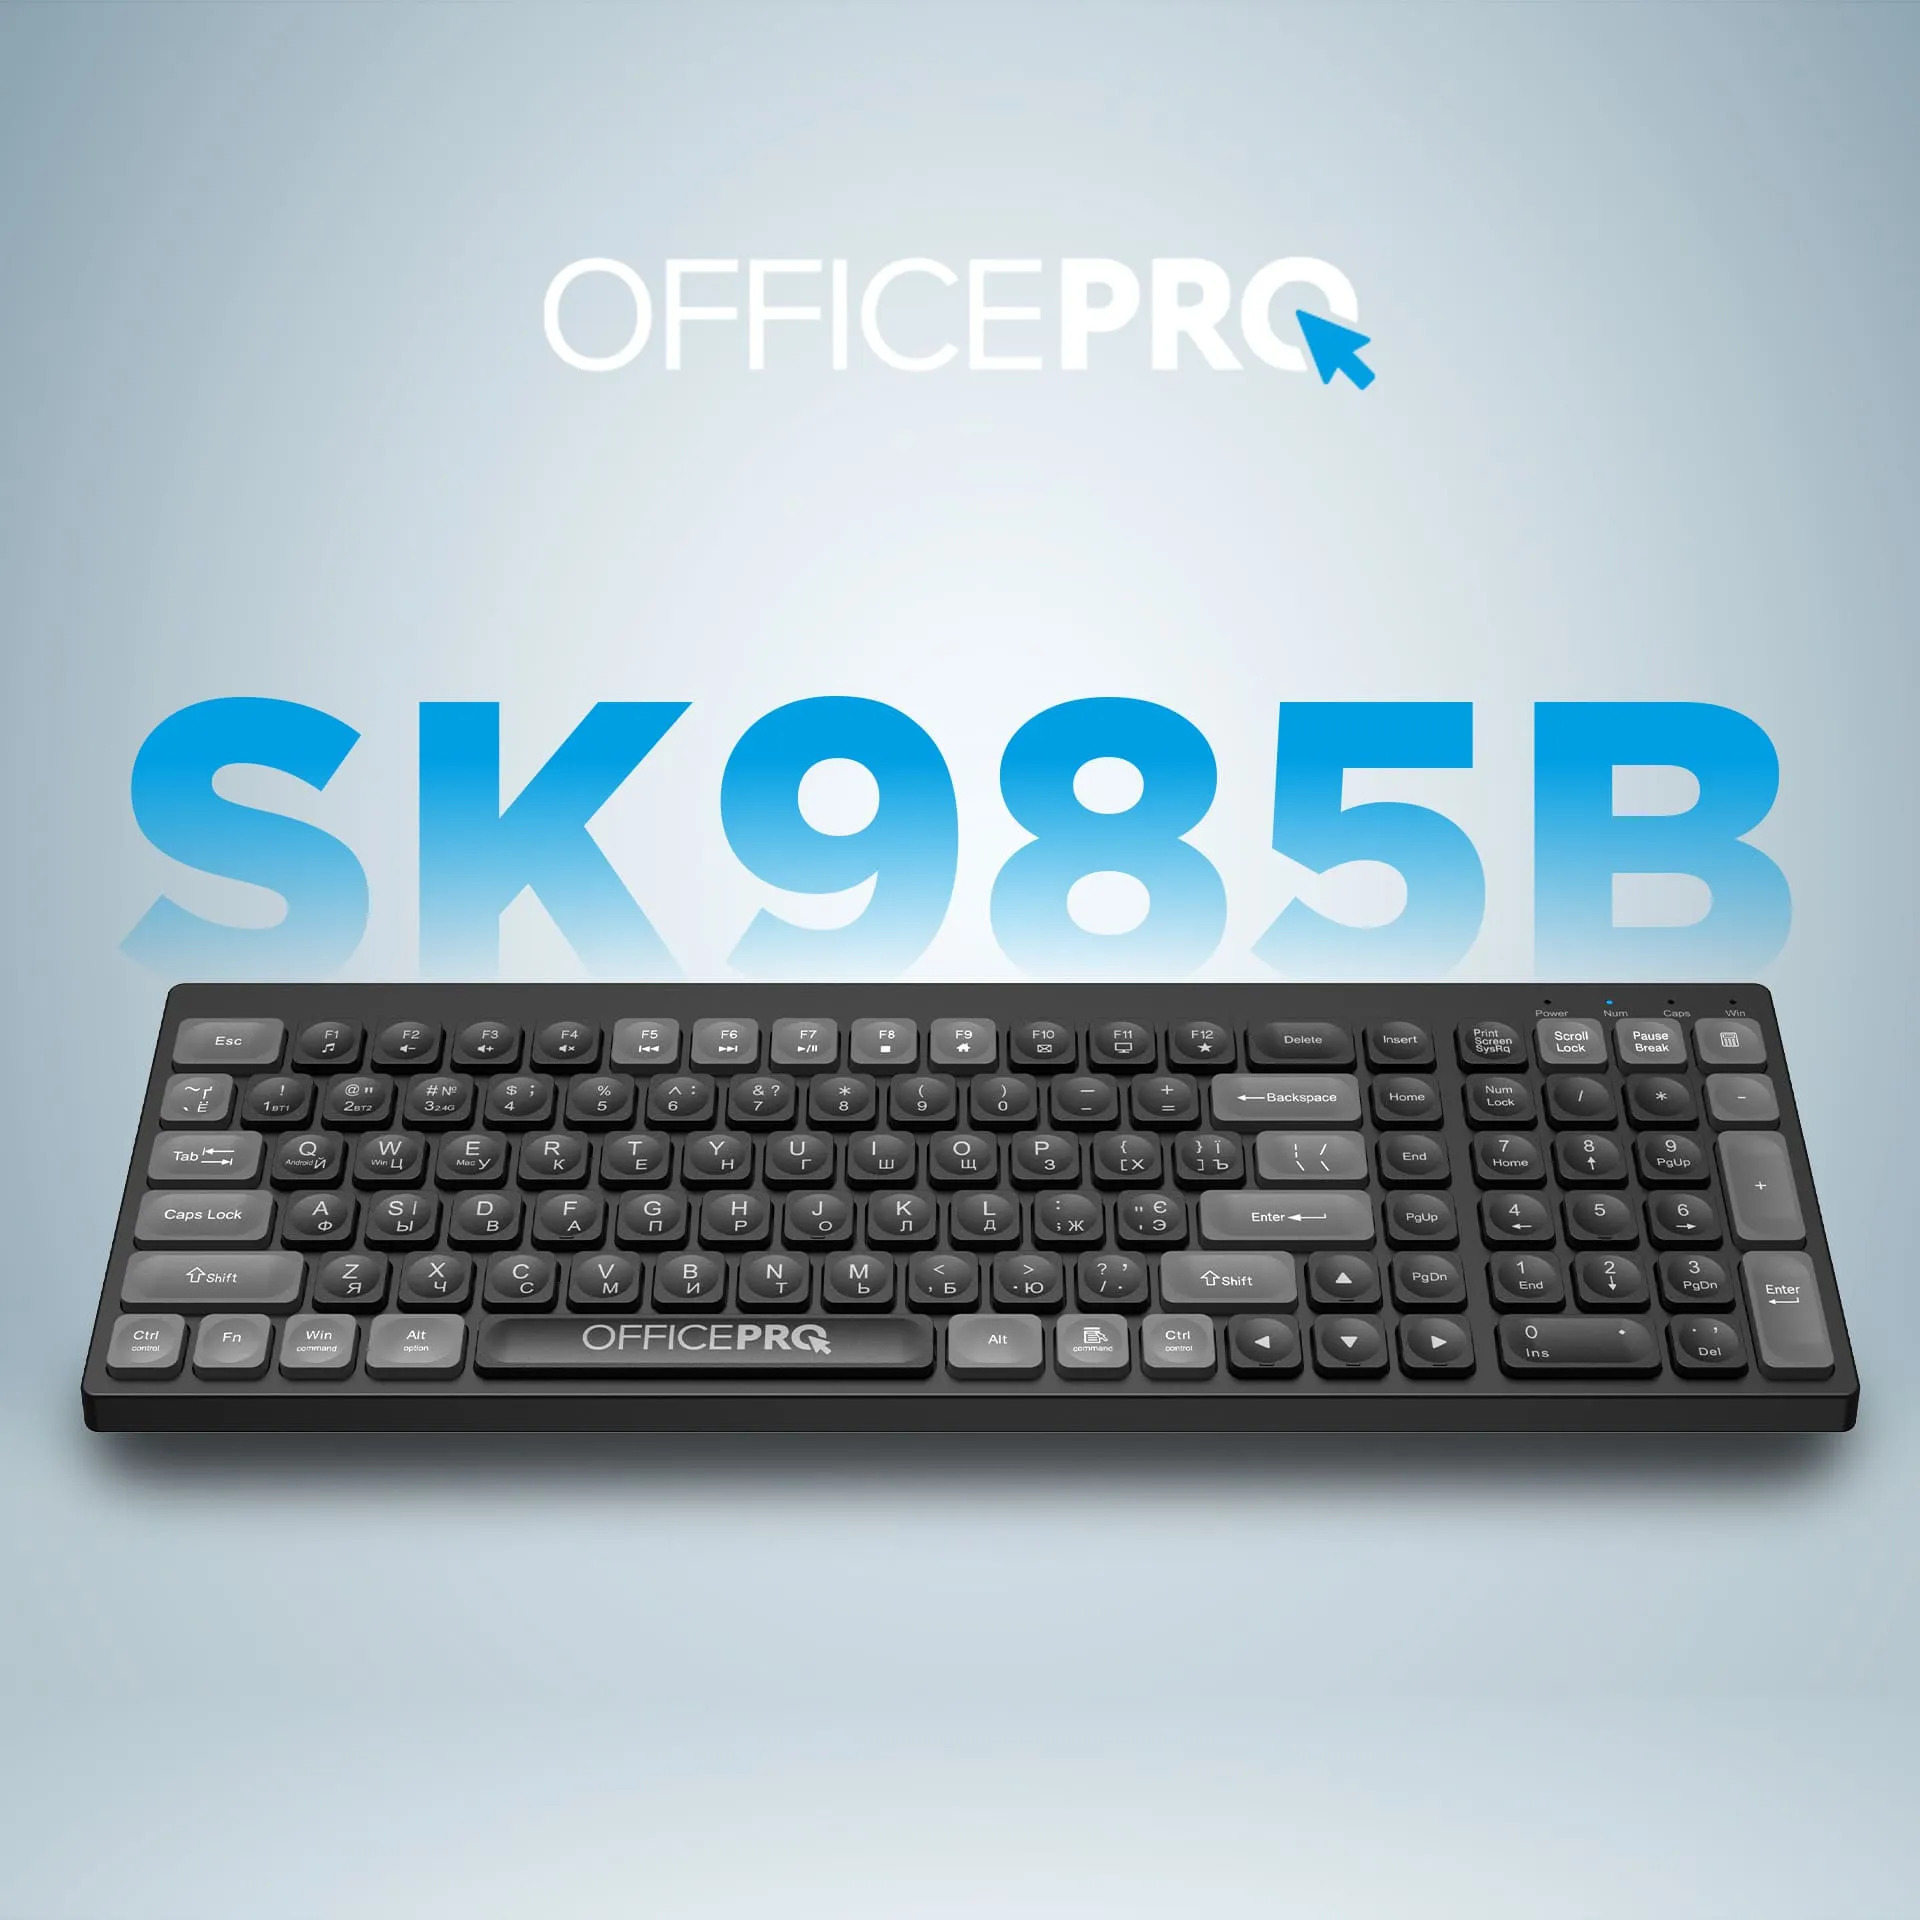 OfficePro SK985